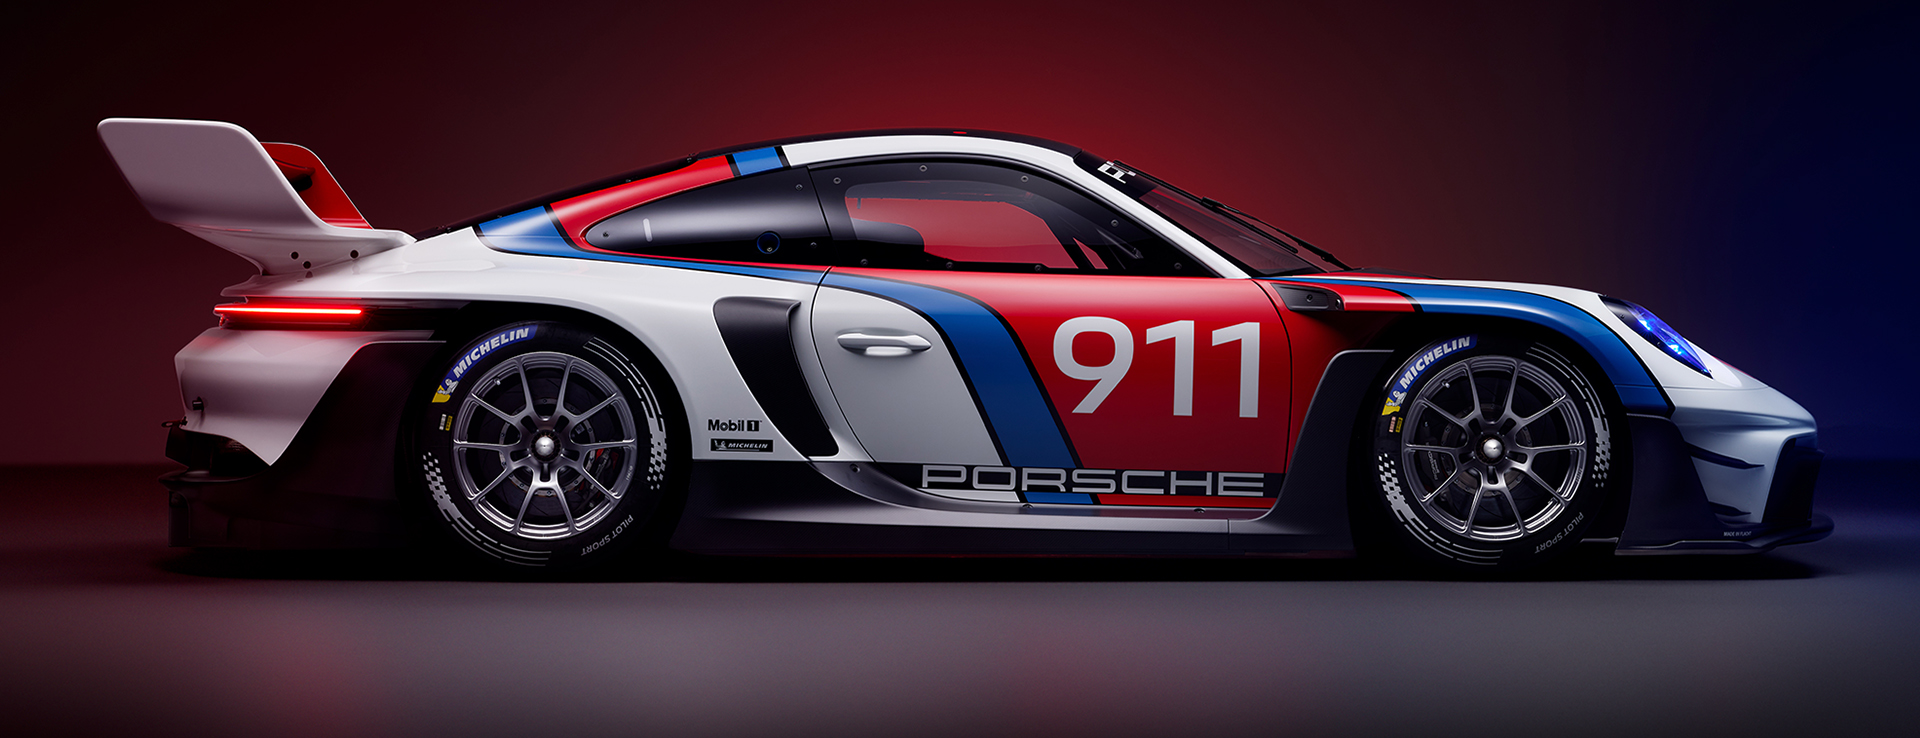 Porsche 911 GT3 R rennsport race car in side profile